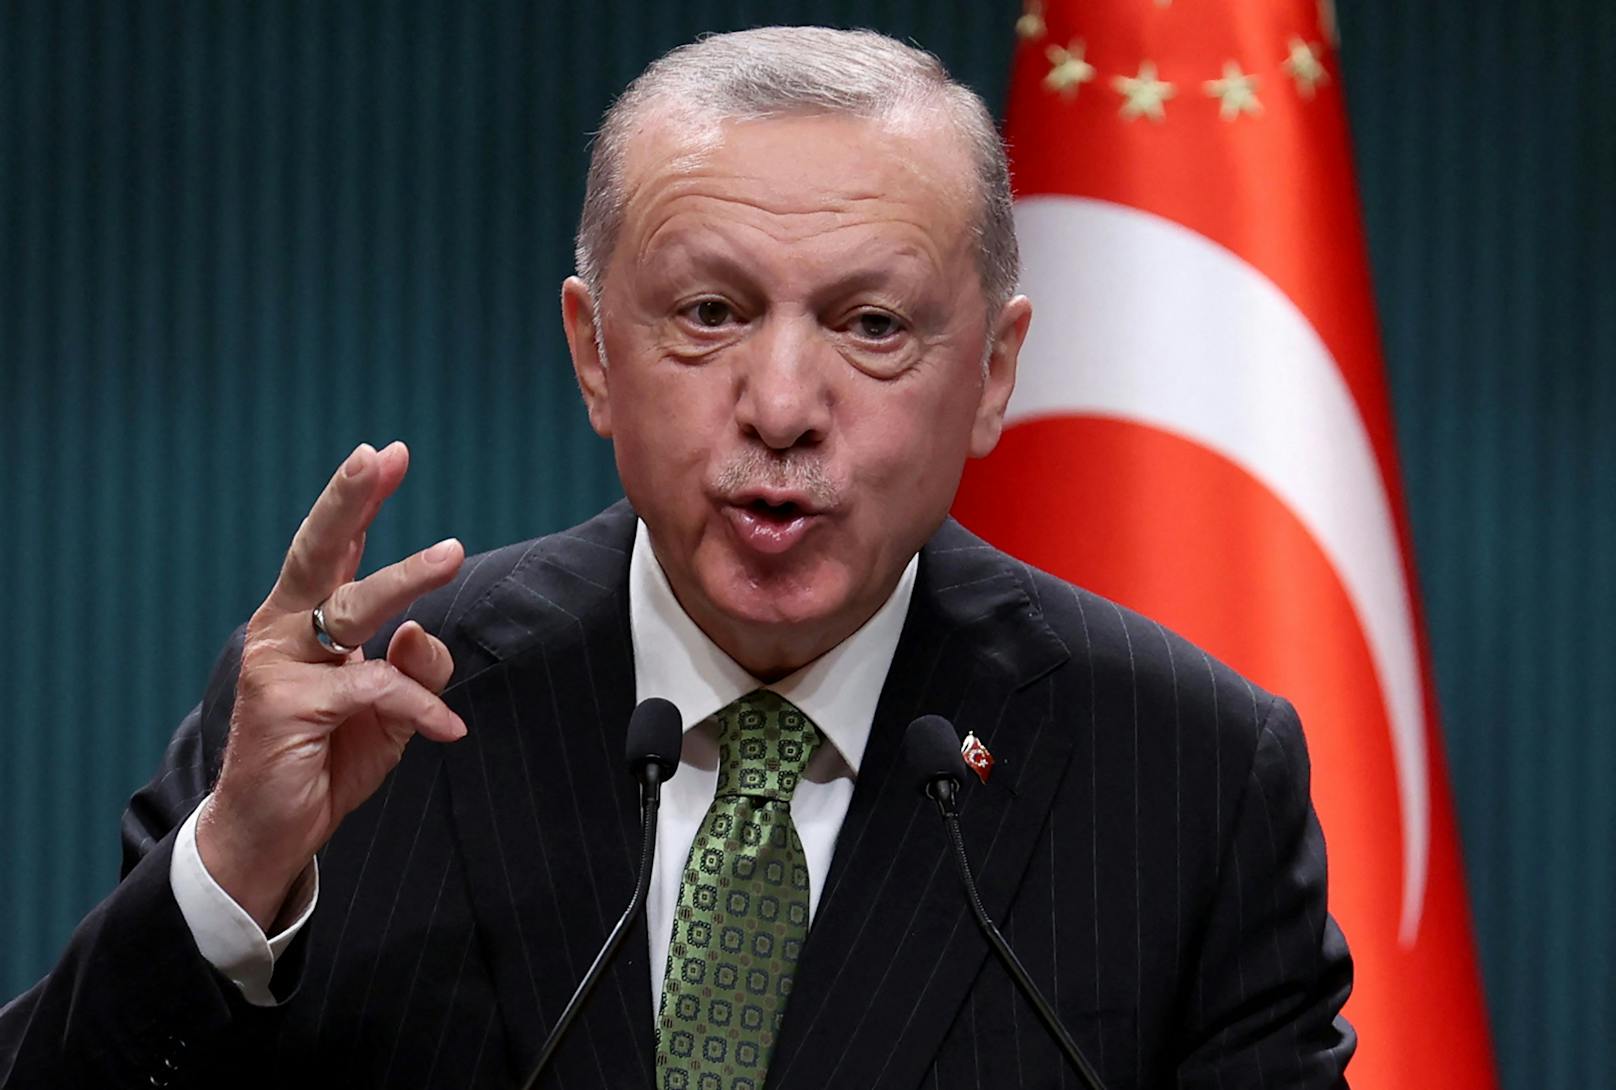 Der türkische Präsident Erdogan will die LGBT-Szene zerschlagen.